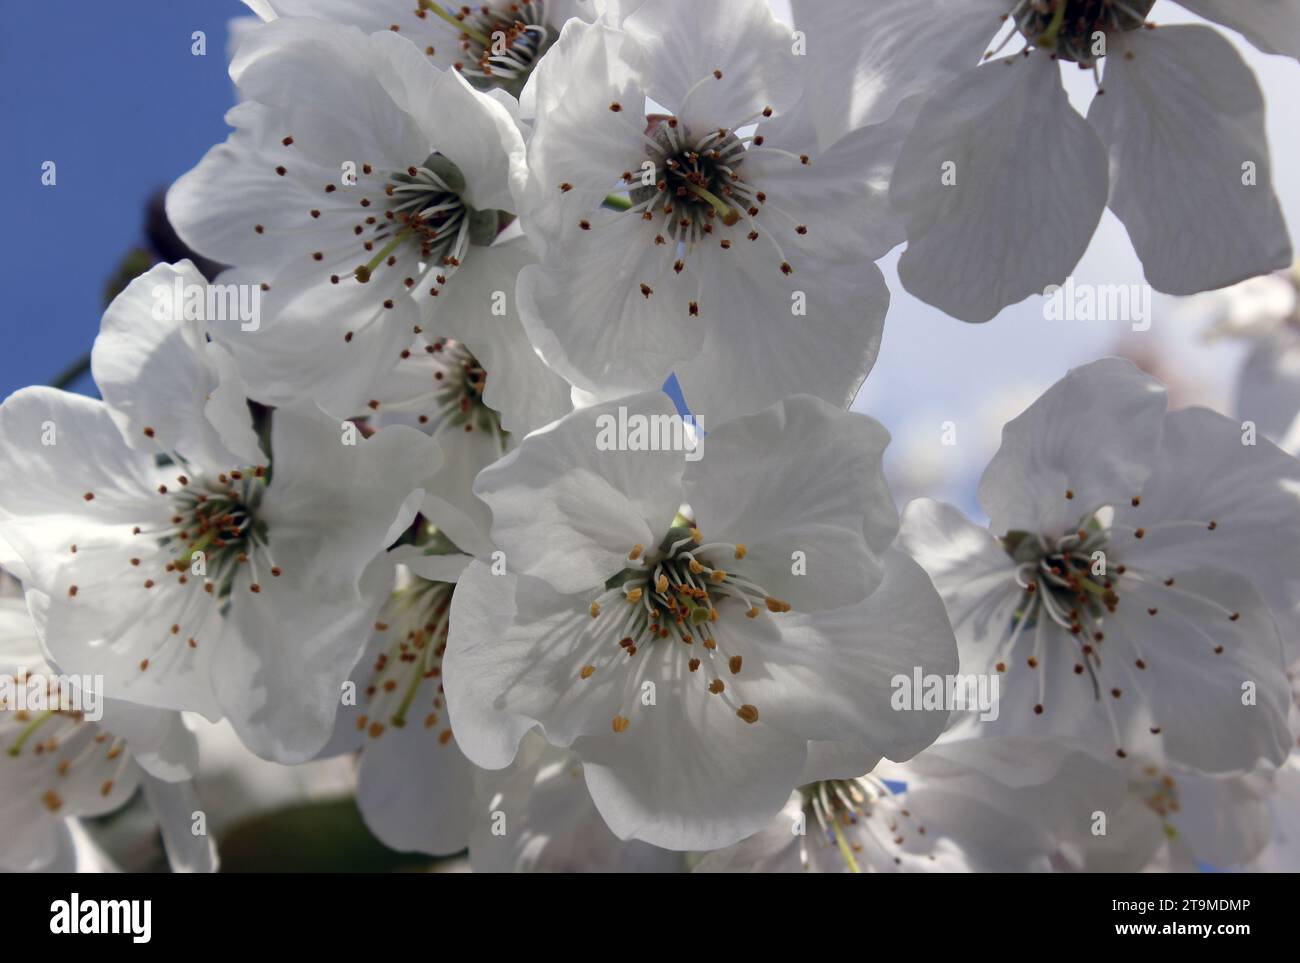 White scented blossom on 'Morello' sour cherry tree Prunus cerasus Morello in spring Stock Photo